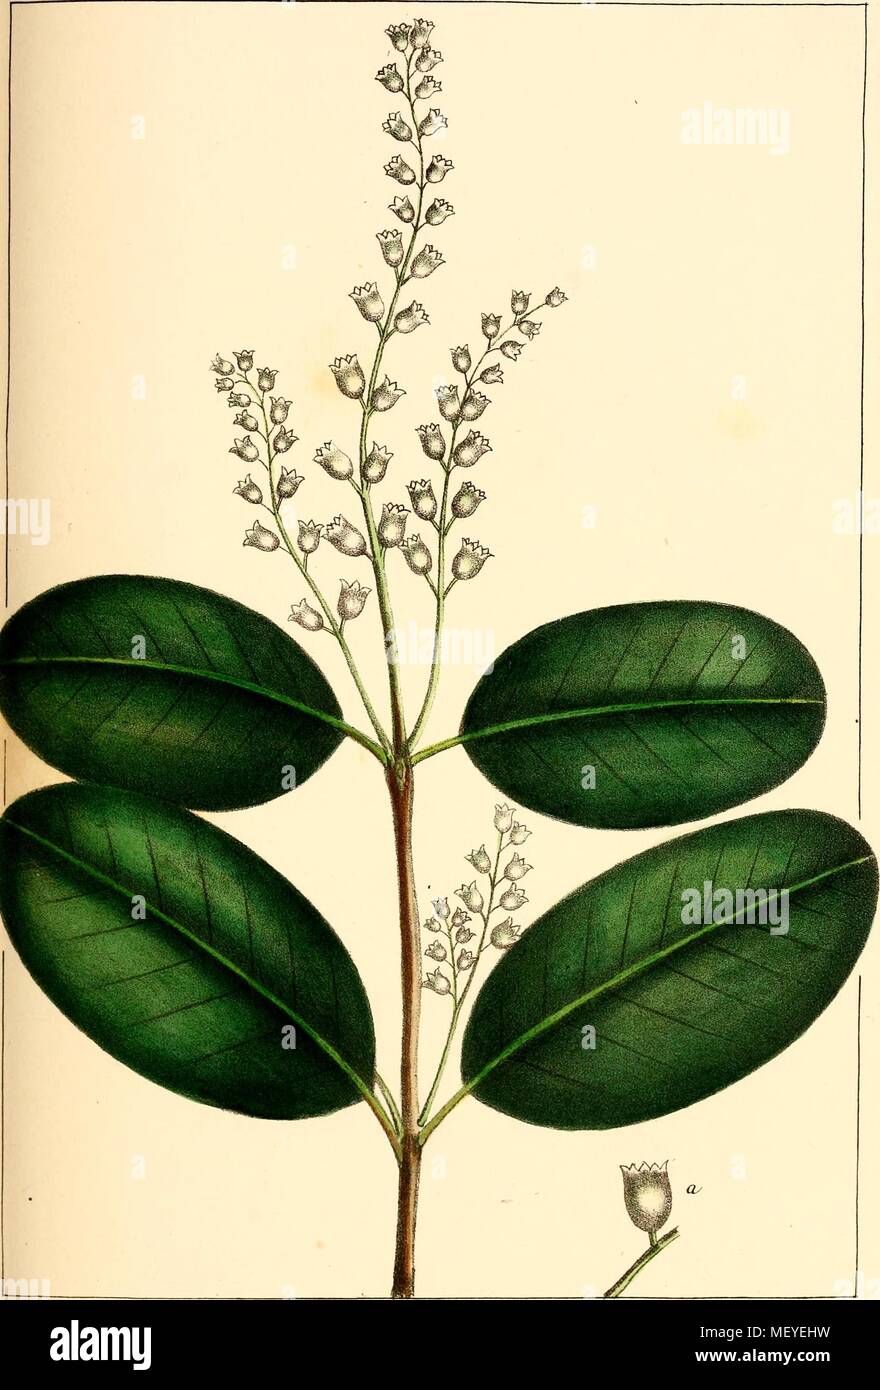 Botanische Illustration der Weiße Mangrove (Laguncularia racemosa) Pflanzen und Blumen, 1865. Mit freundlicher Genehmigung Internet Archive. () Stockfoto